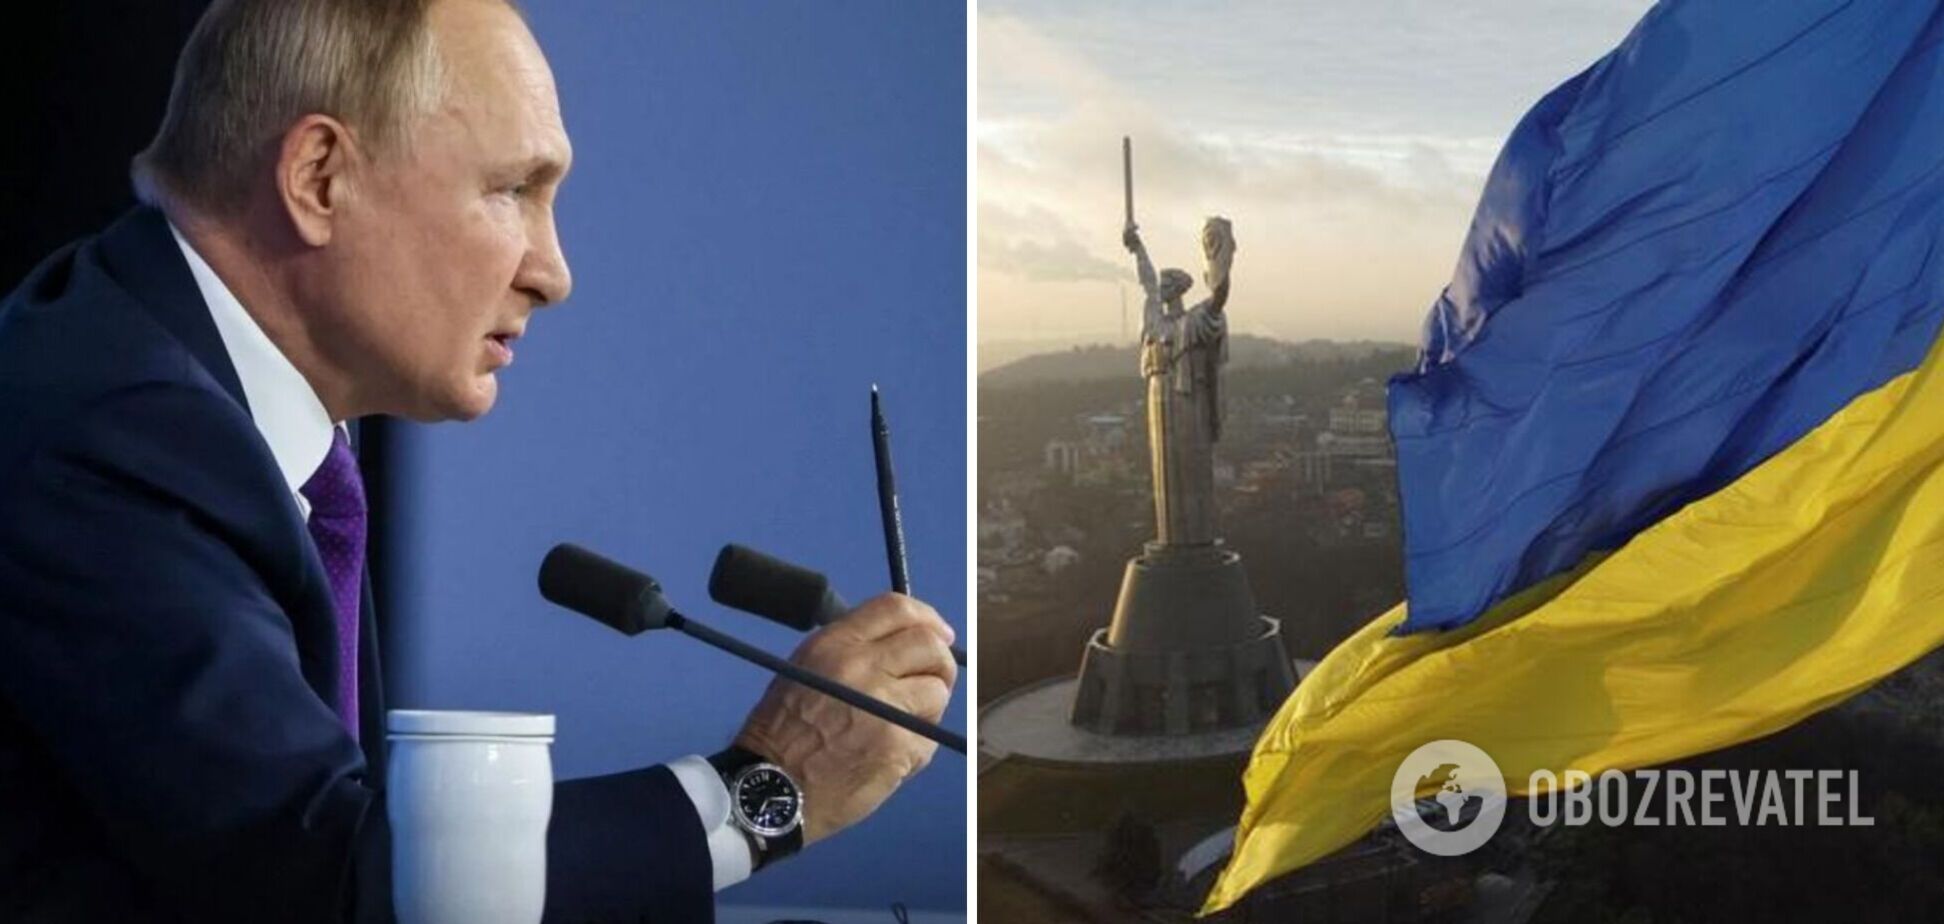 Путин обозначил свои территориальные претензии: Украина пришла с тремя областями, остальное добавил Ленин